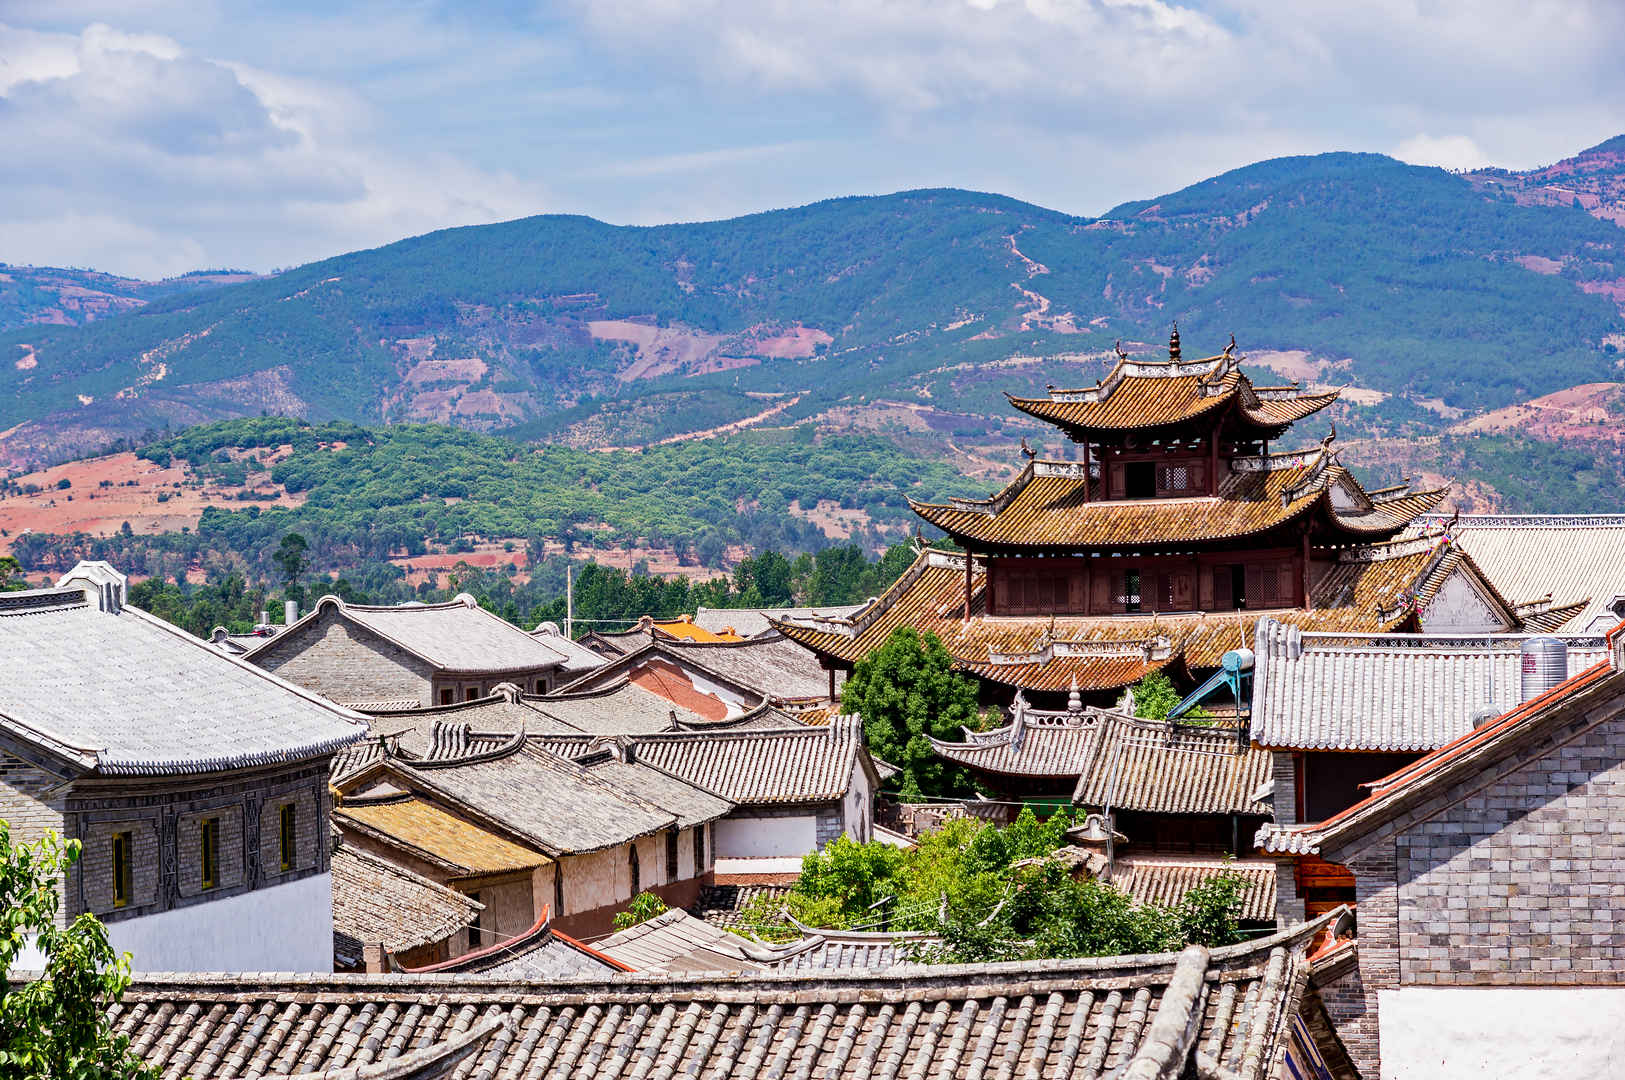 中国传统平铺屋顶特色建筑顶视图